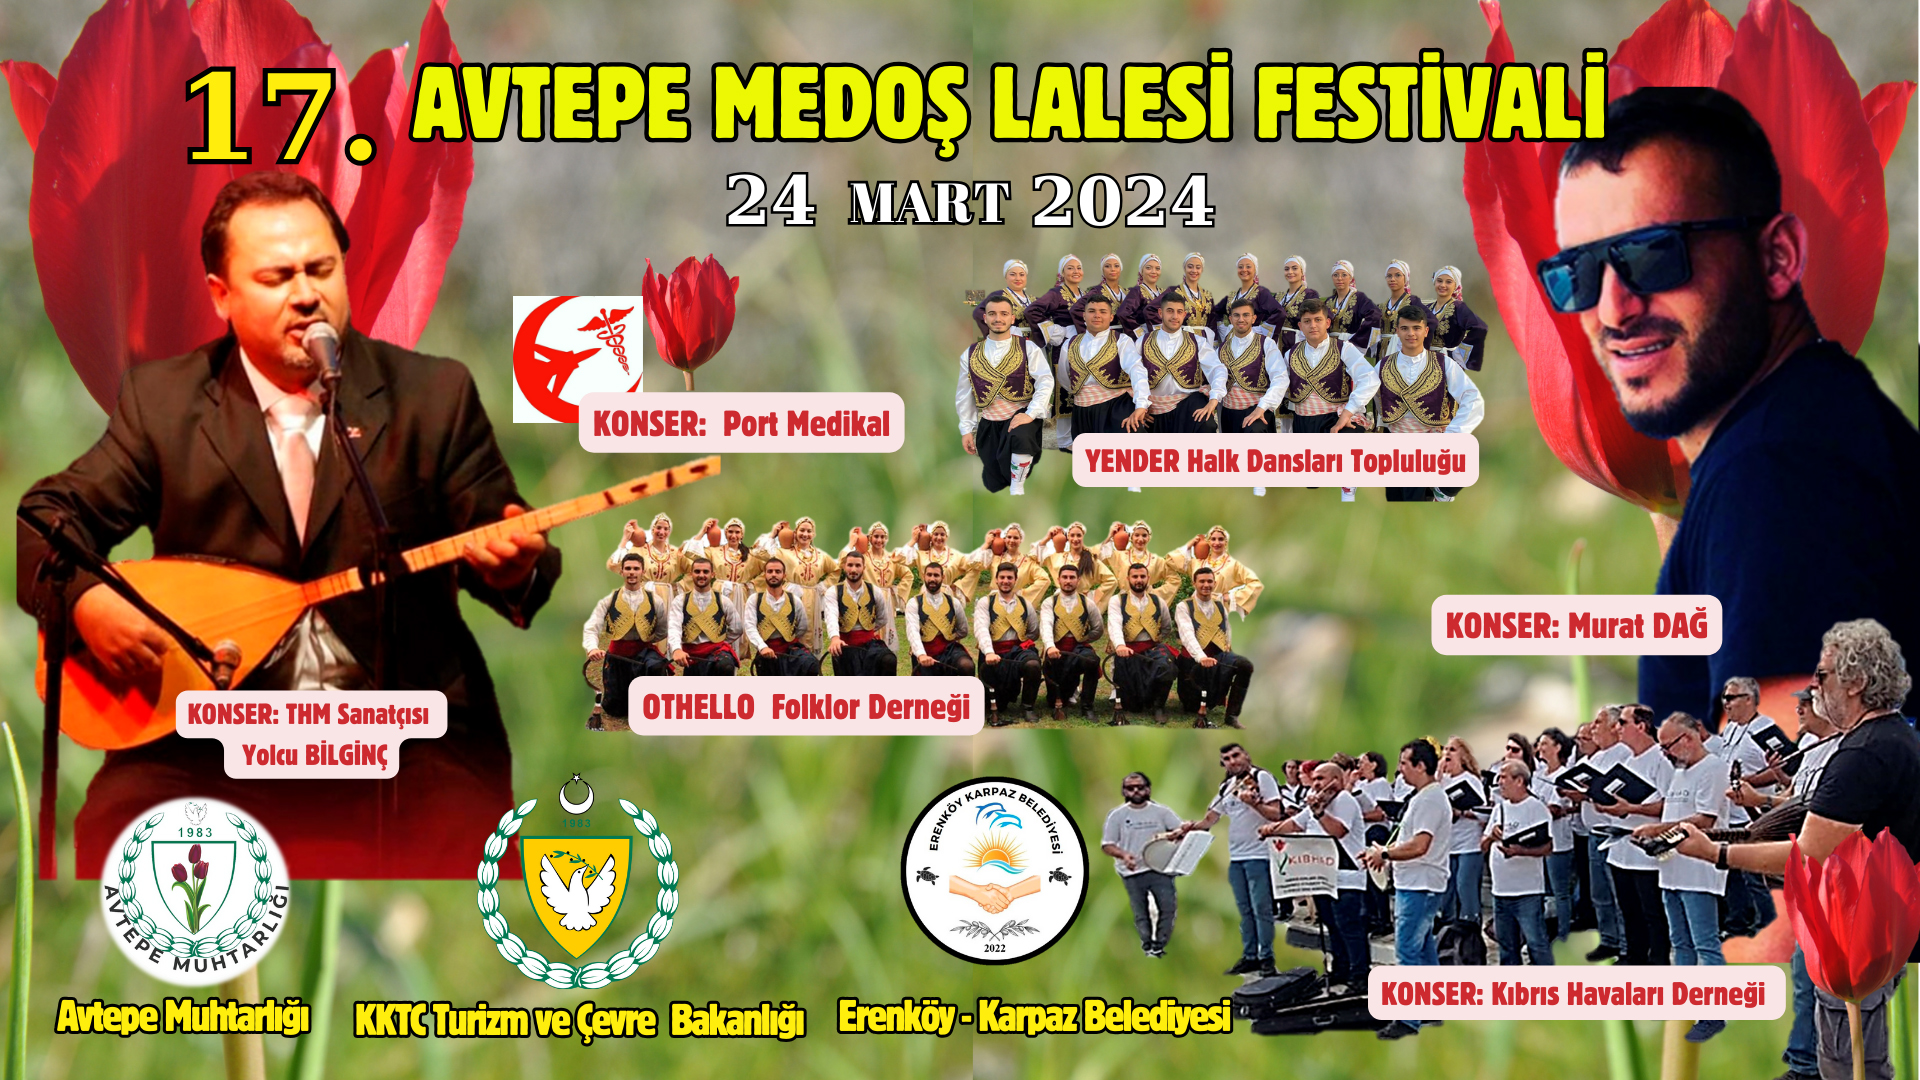 Avtepe Festival 1